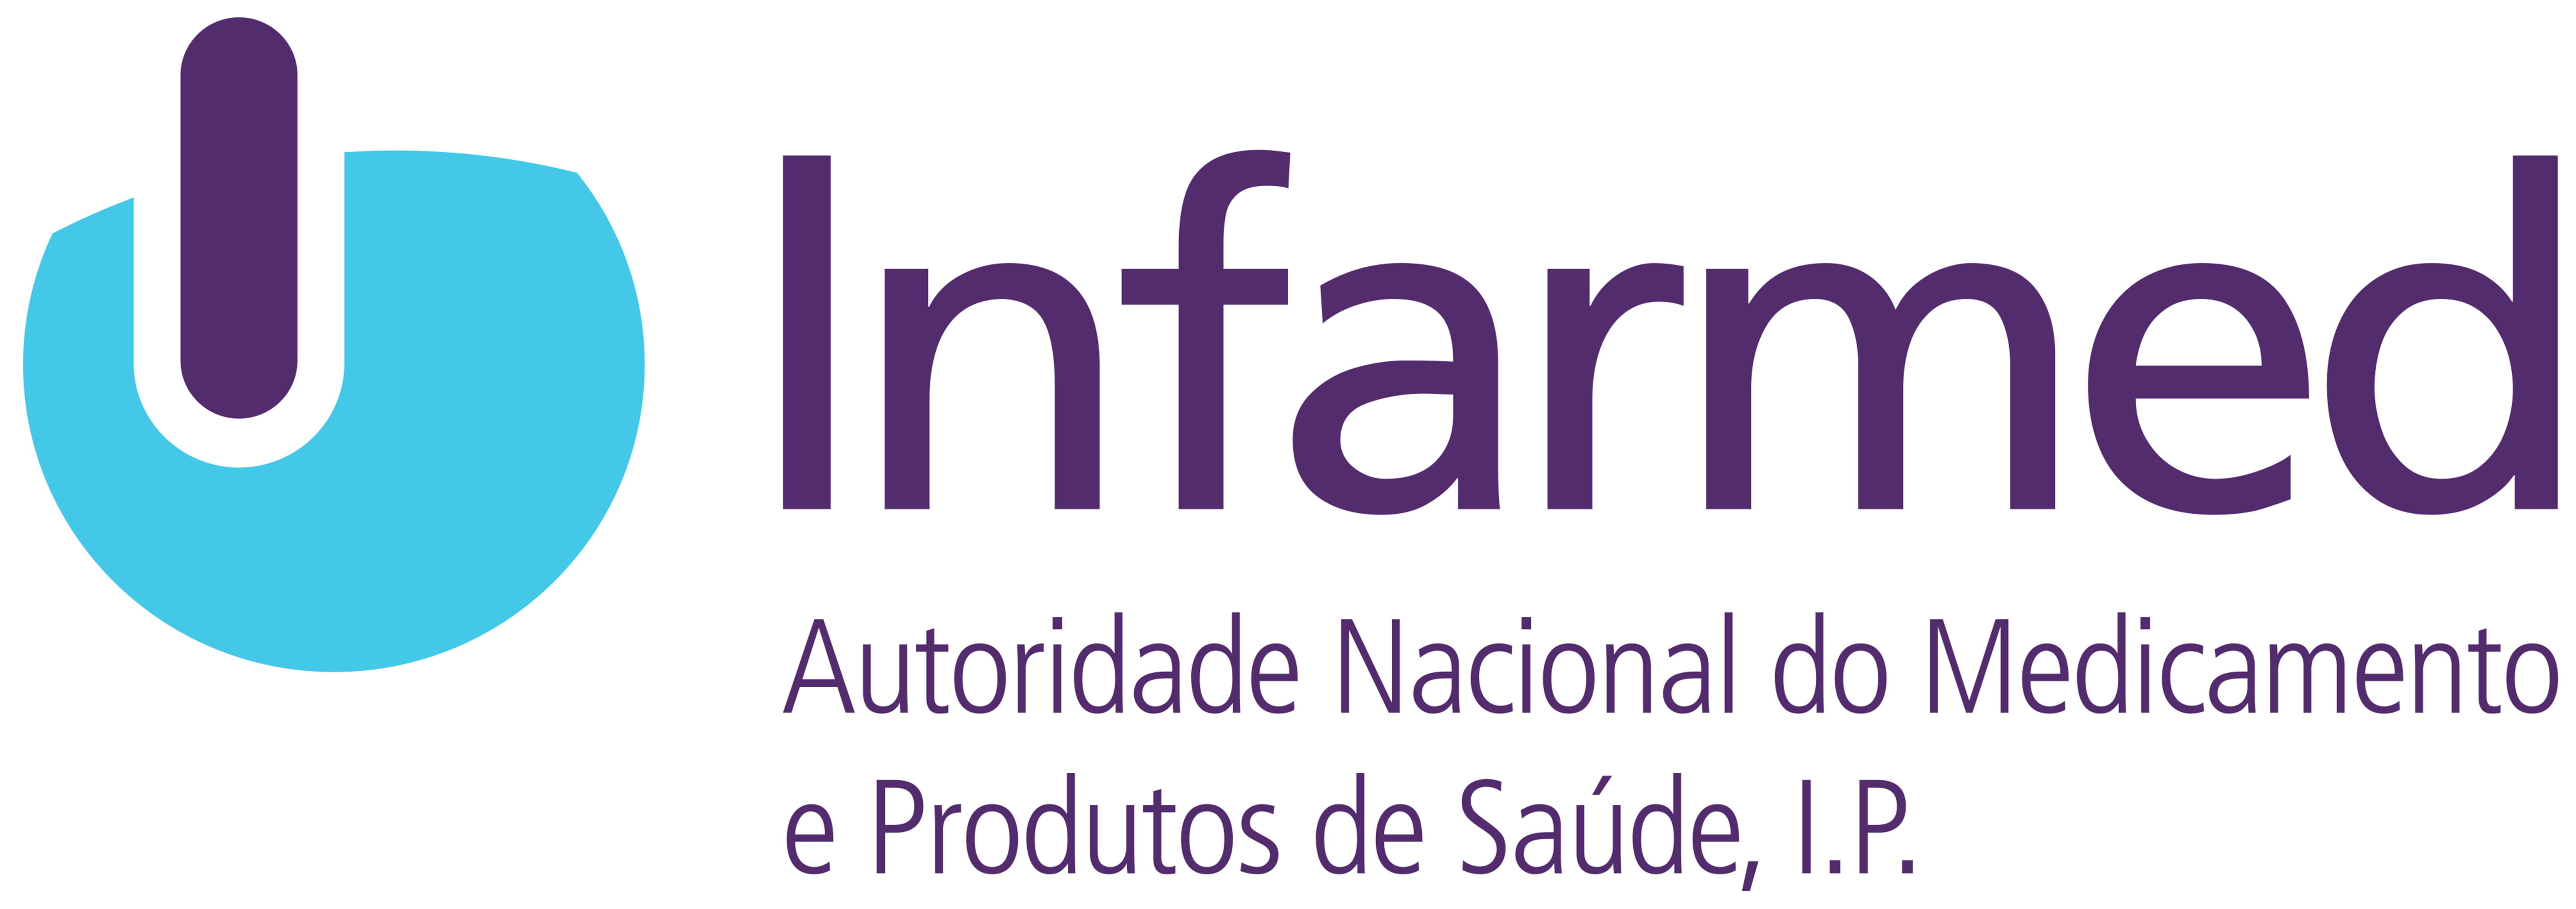 Logotipo do Infarmed